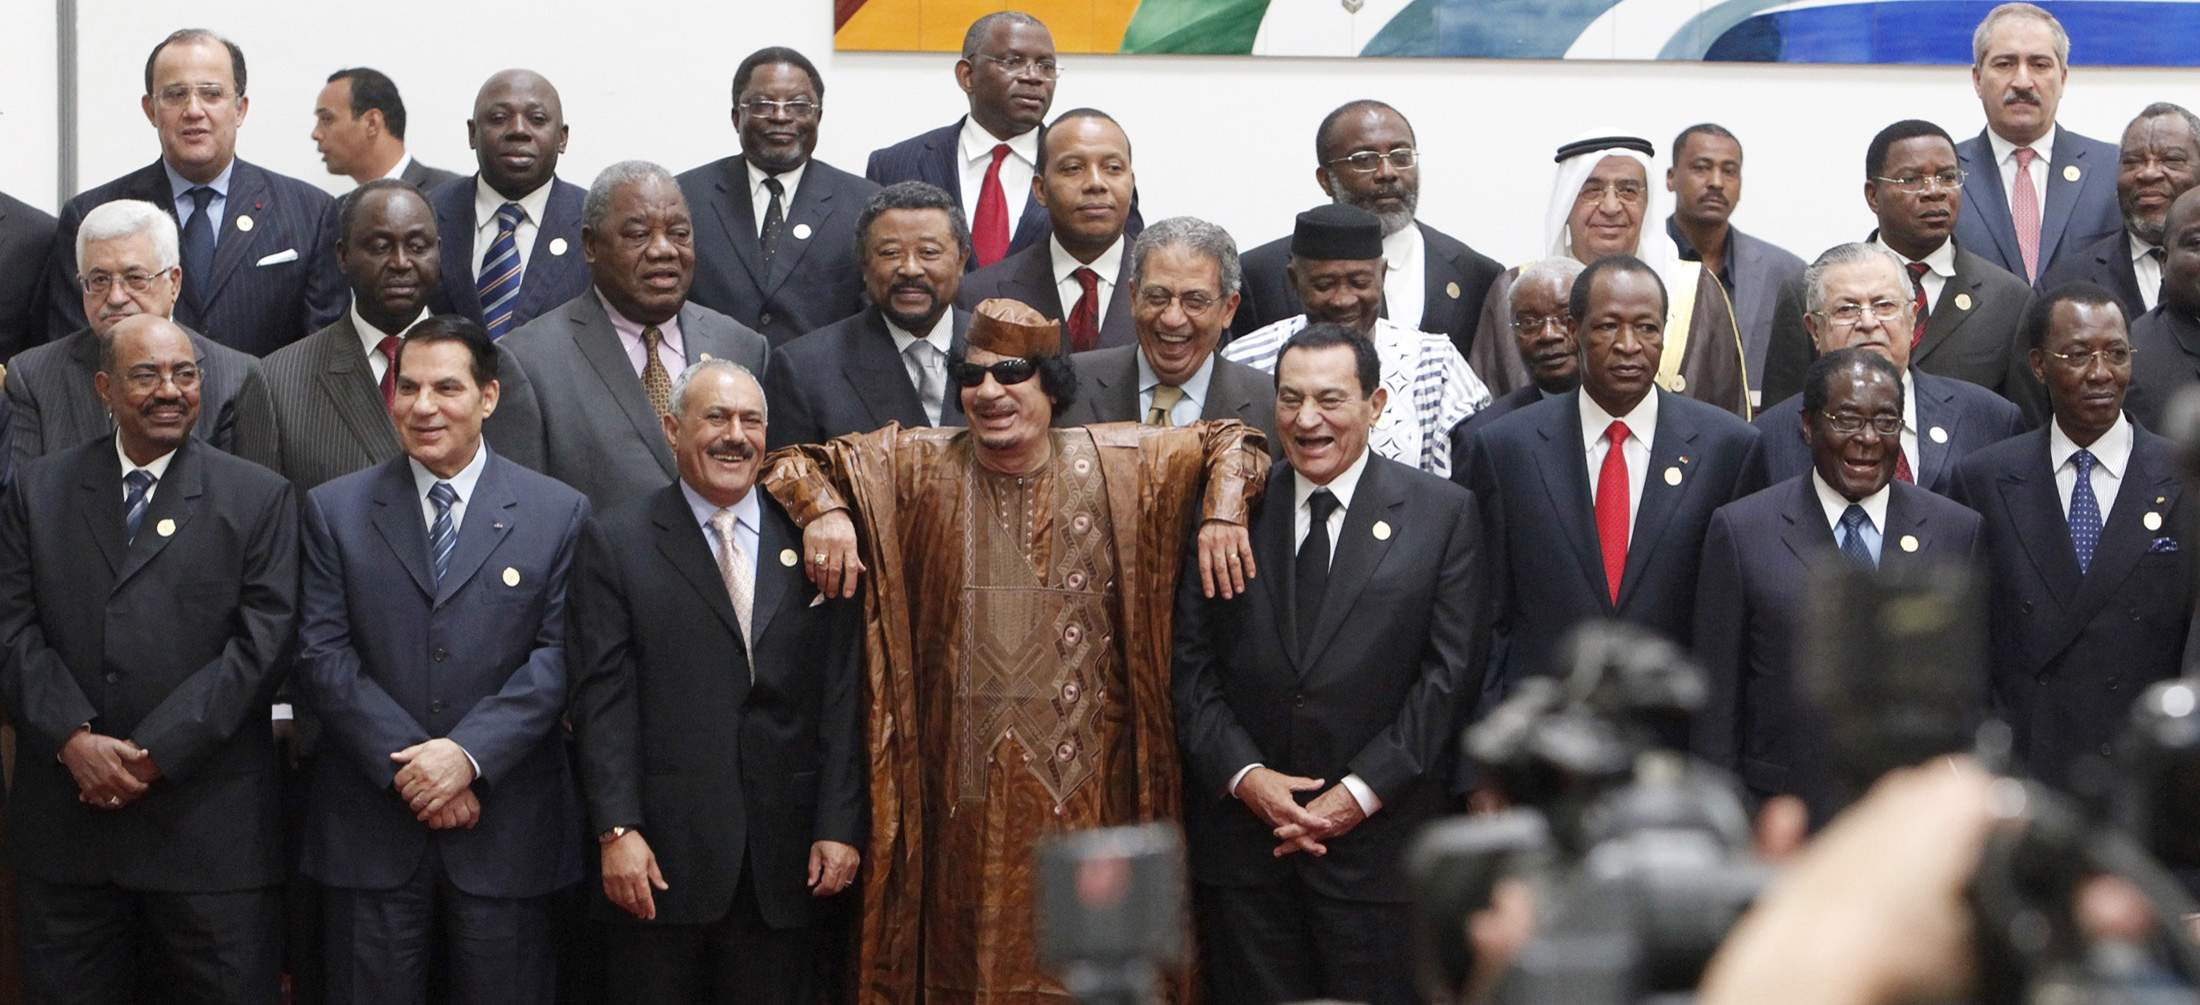 سرت: صورة تذكارية اثناء افتتاح اعمال القمة العربية الافريقية الثانية، 10-10-2010